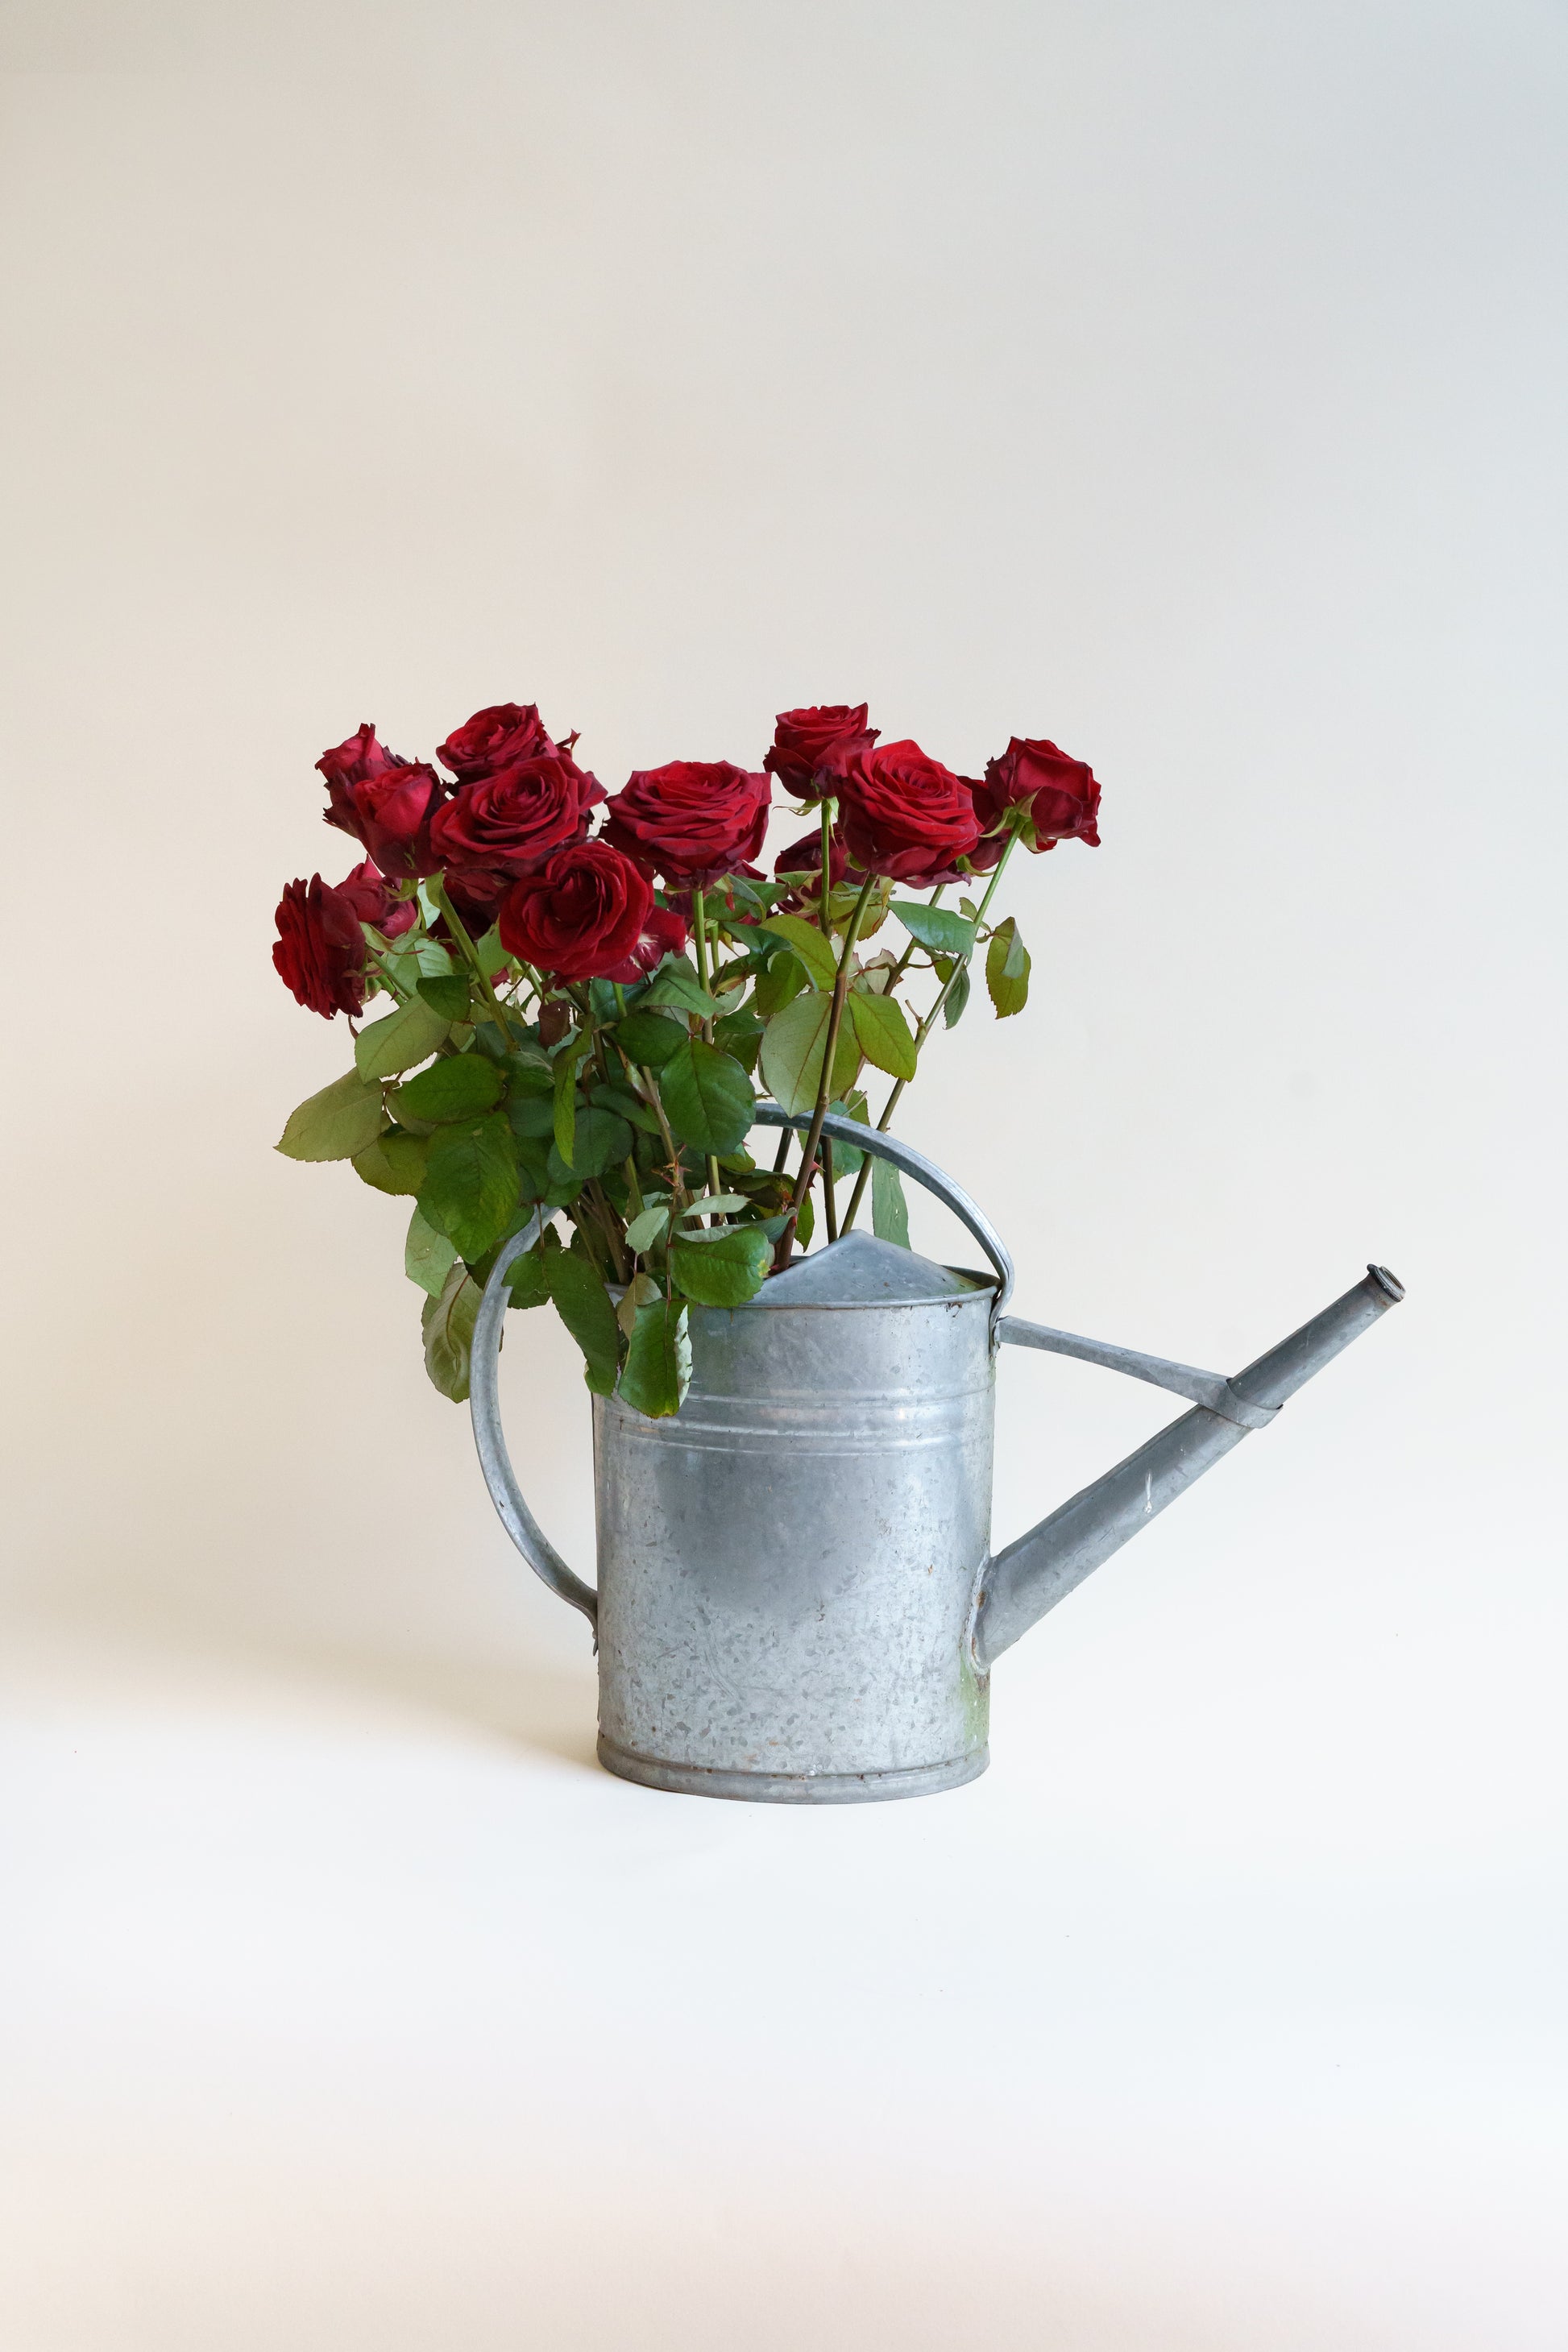 Rode rozen online bestellen?  Wij bezorgen onze bloemen plukvers en razensnel